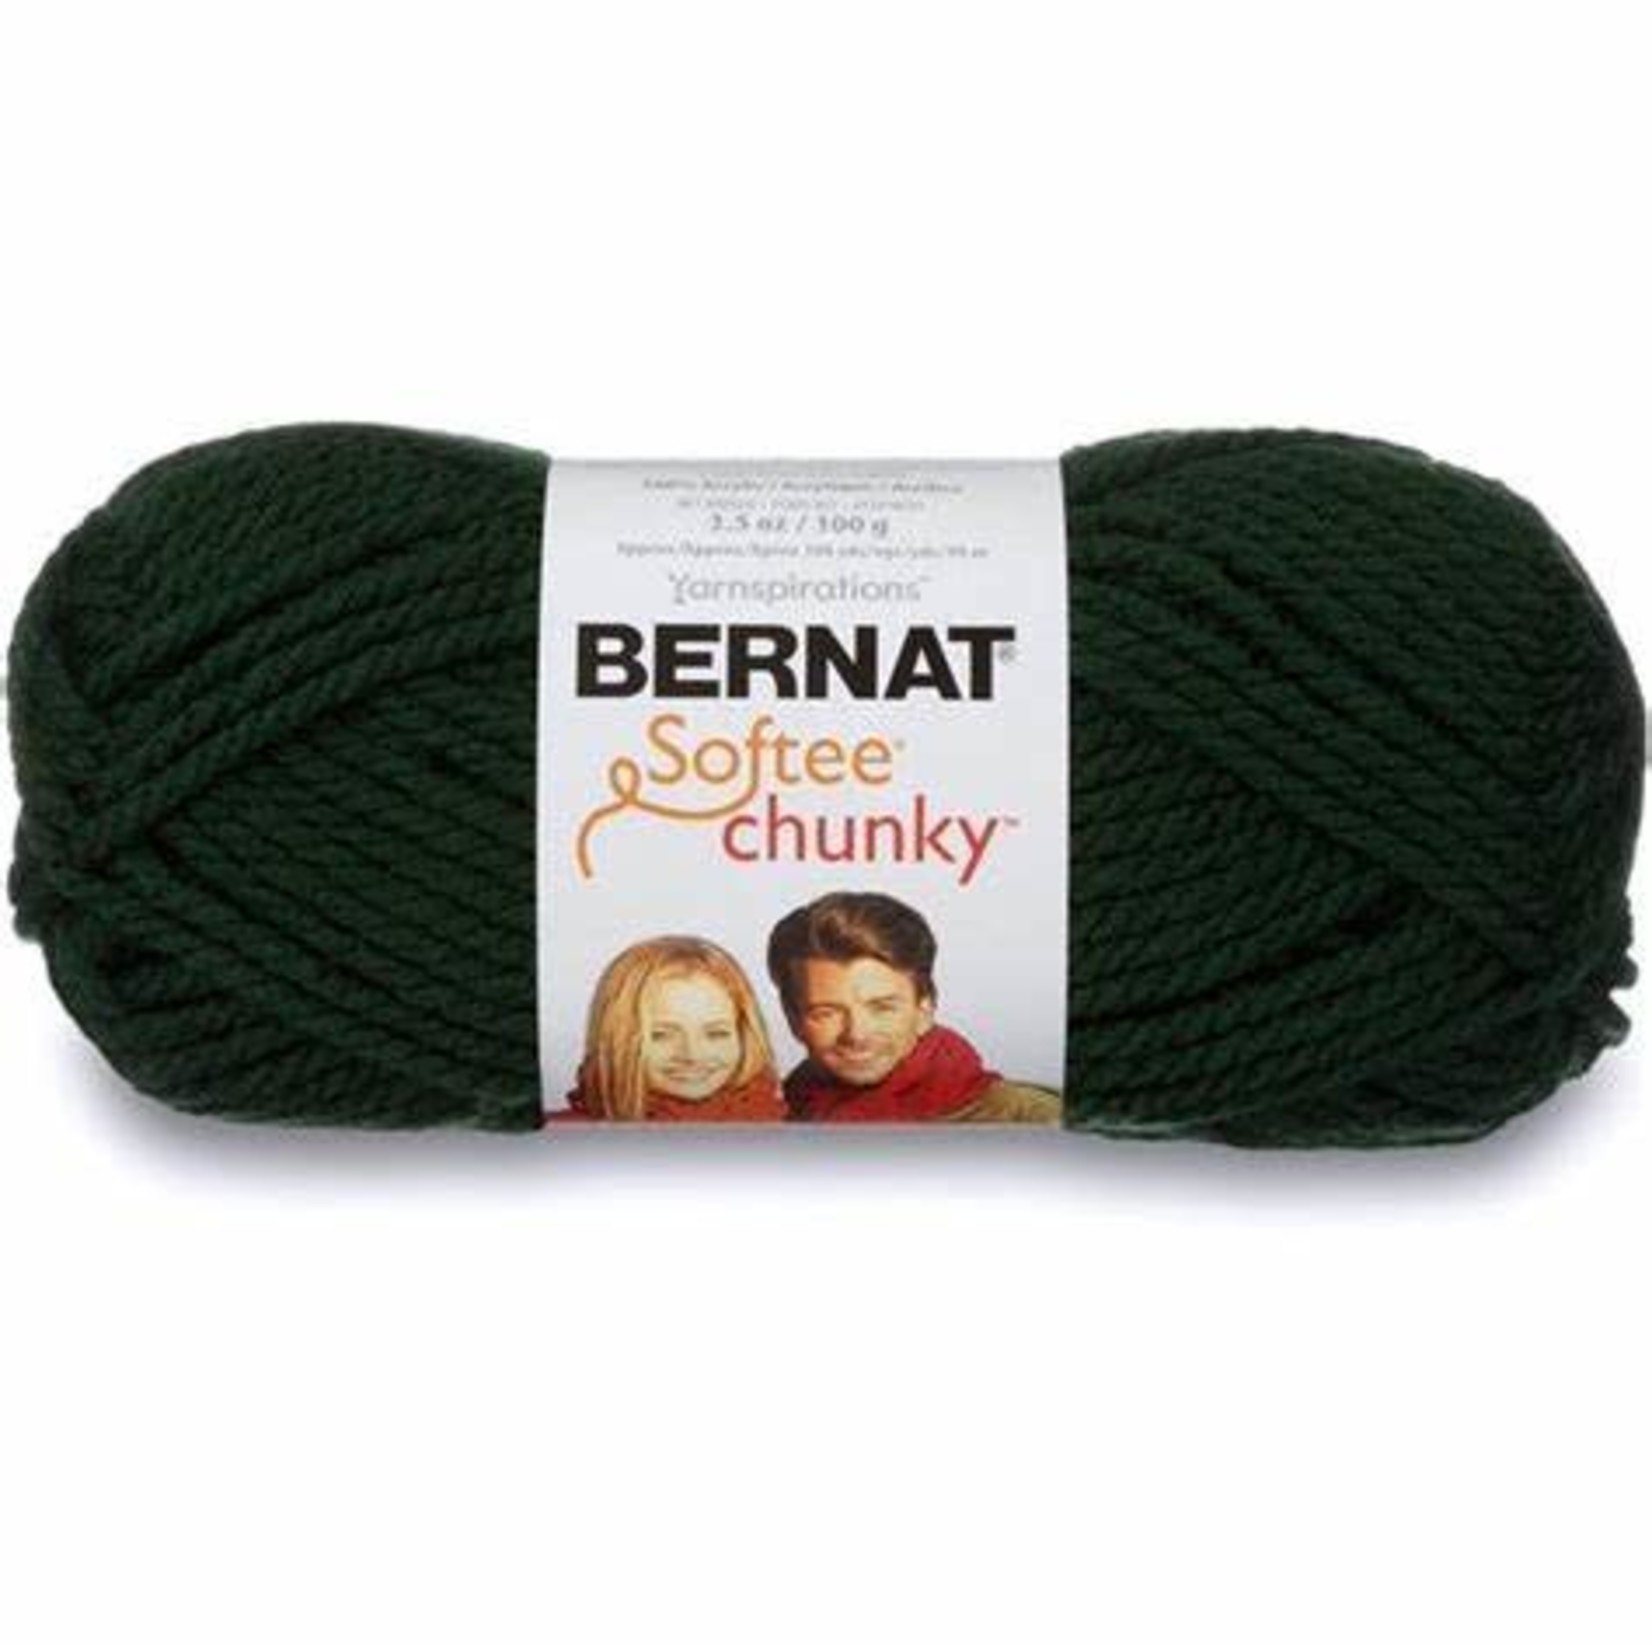 Bernat Softee Chunky - Dark Green